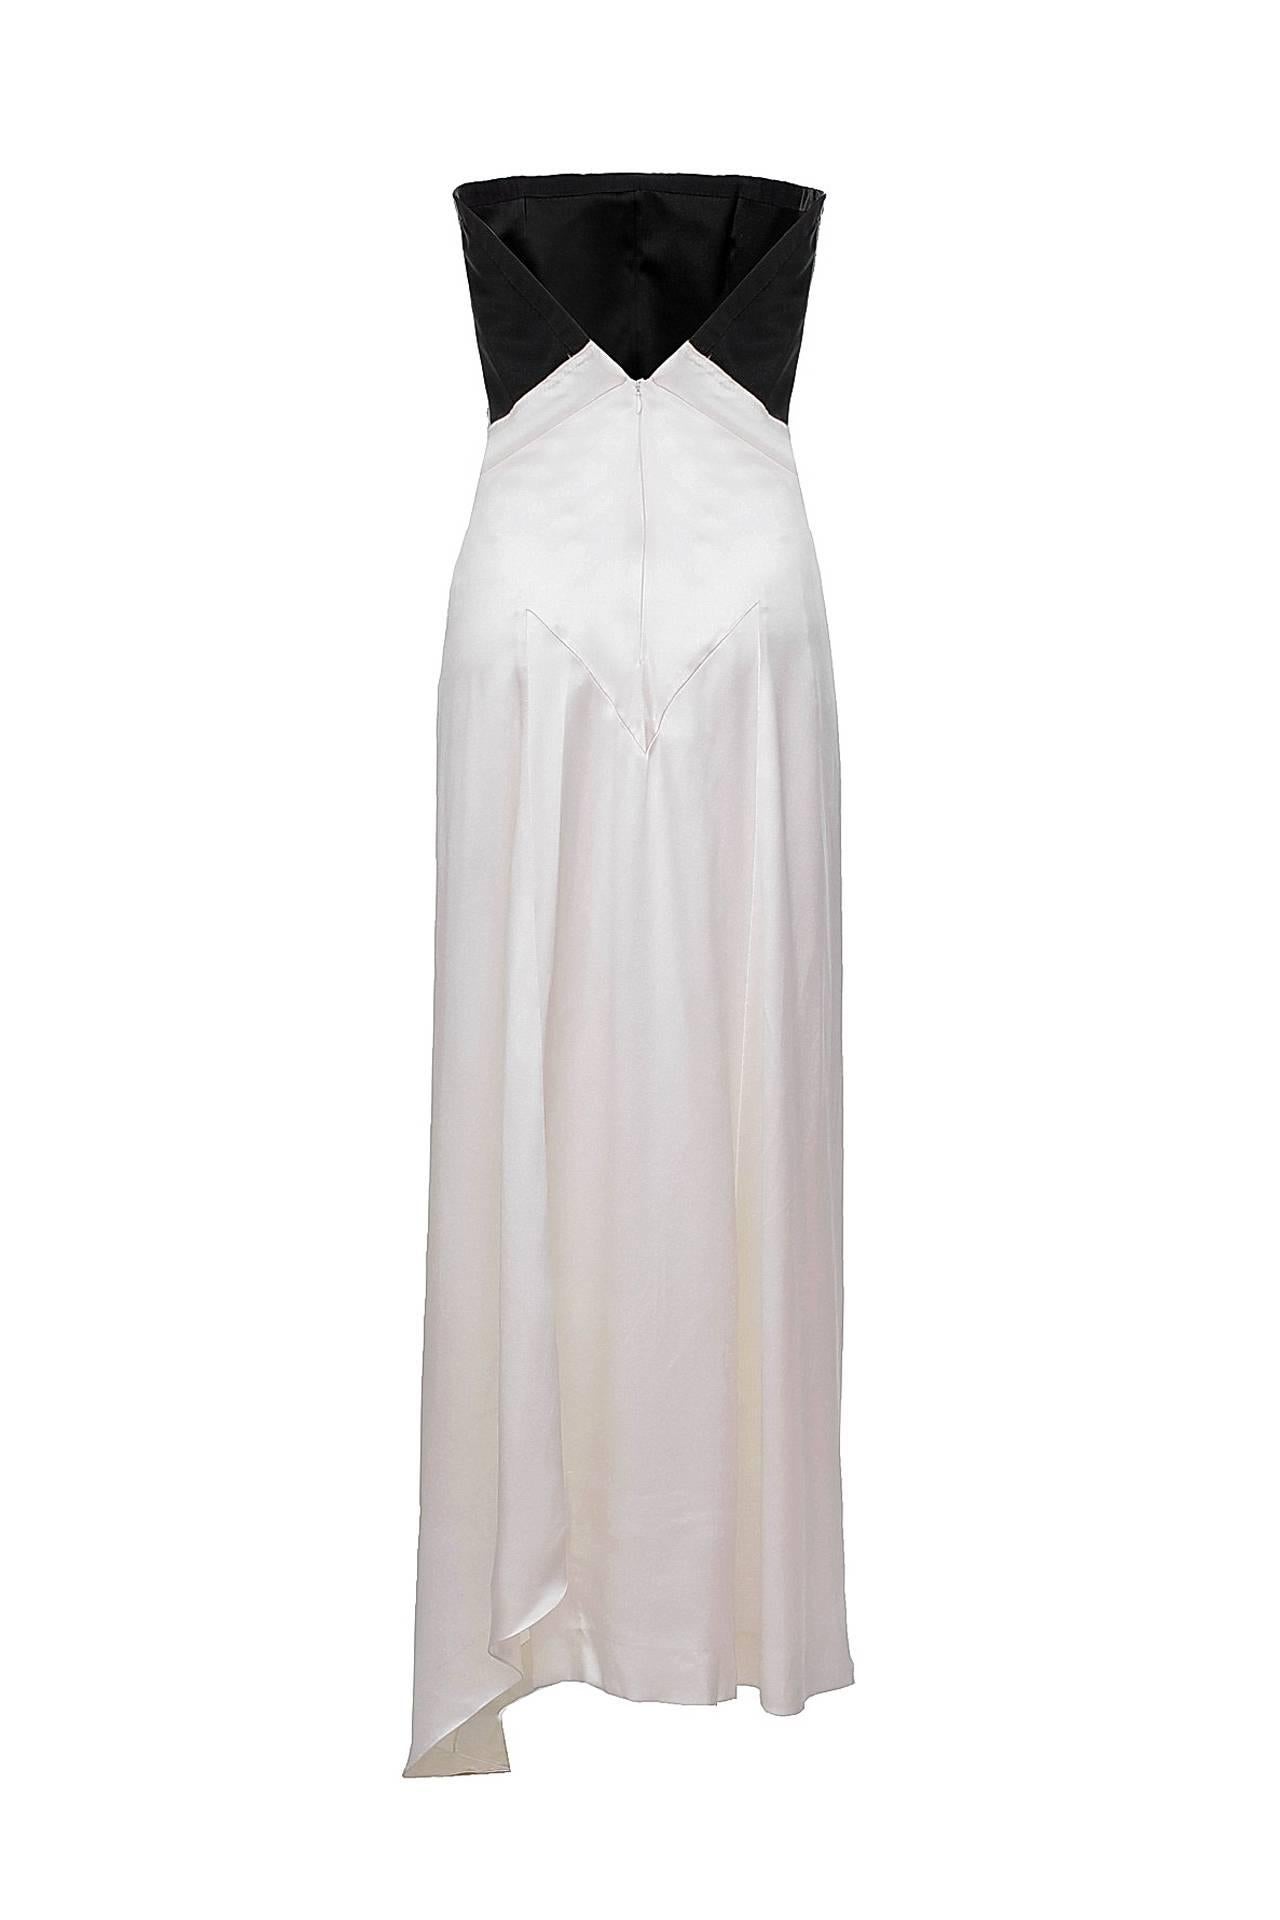 Vintage Yves Saint Laurent Evening Gown

FR Size 38

100% Silk

Excellent condition